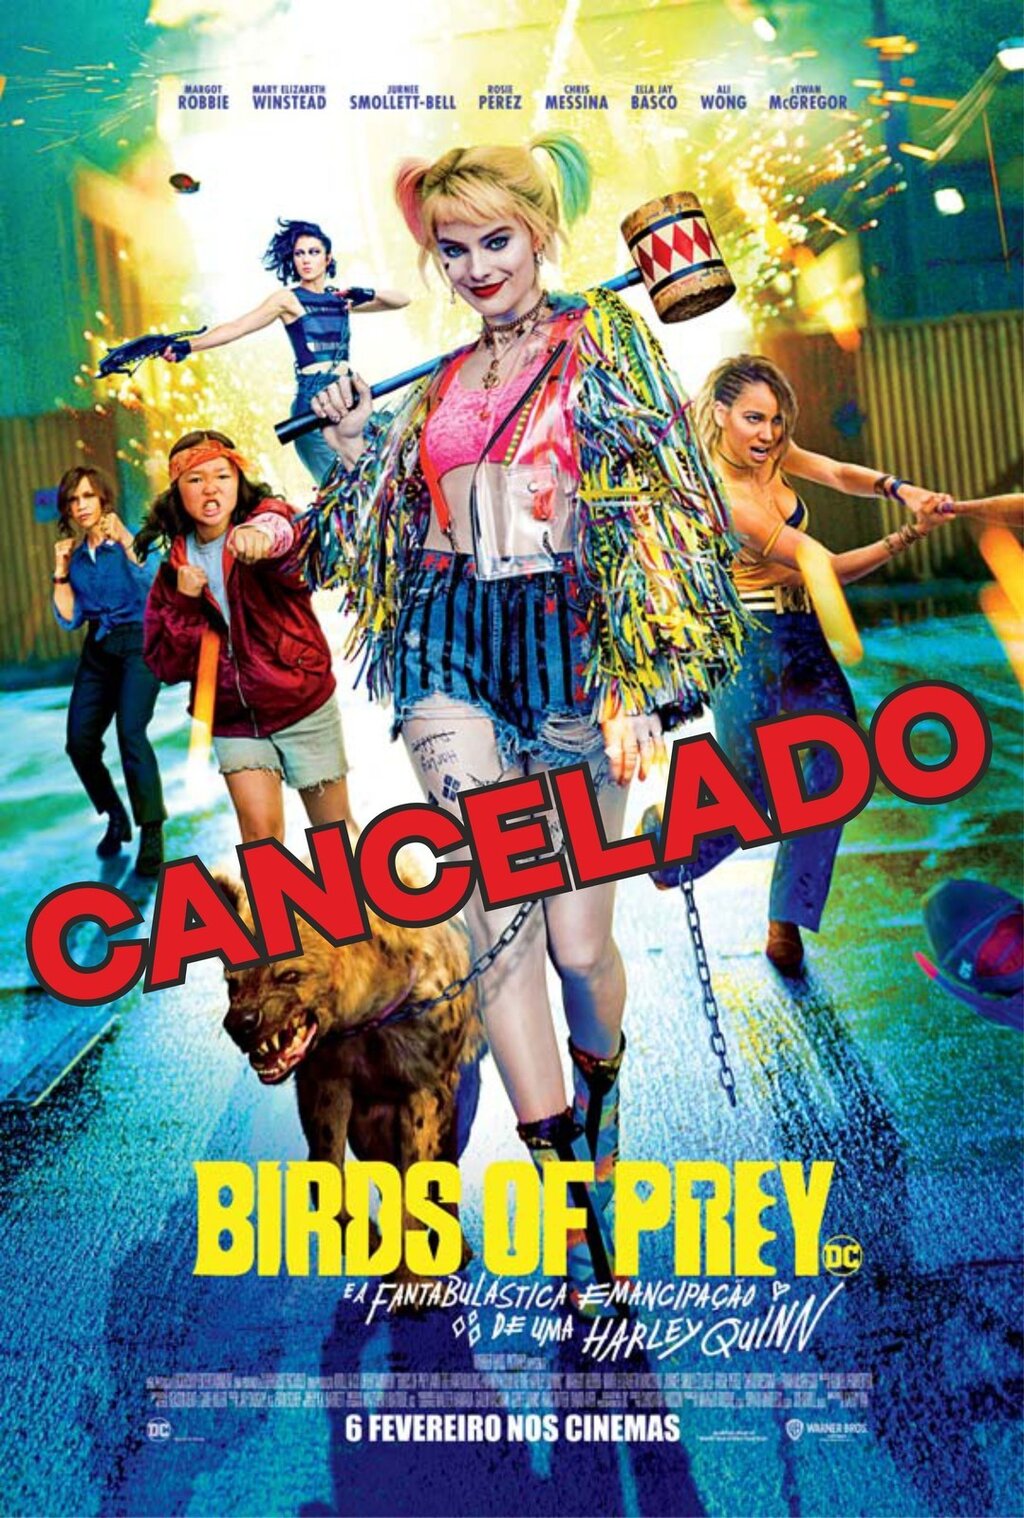 “Birds Of Prey (e a Fantabulástica Emancipação de uma Harley Quinn” - CANCELADO